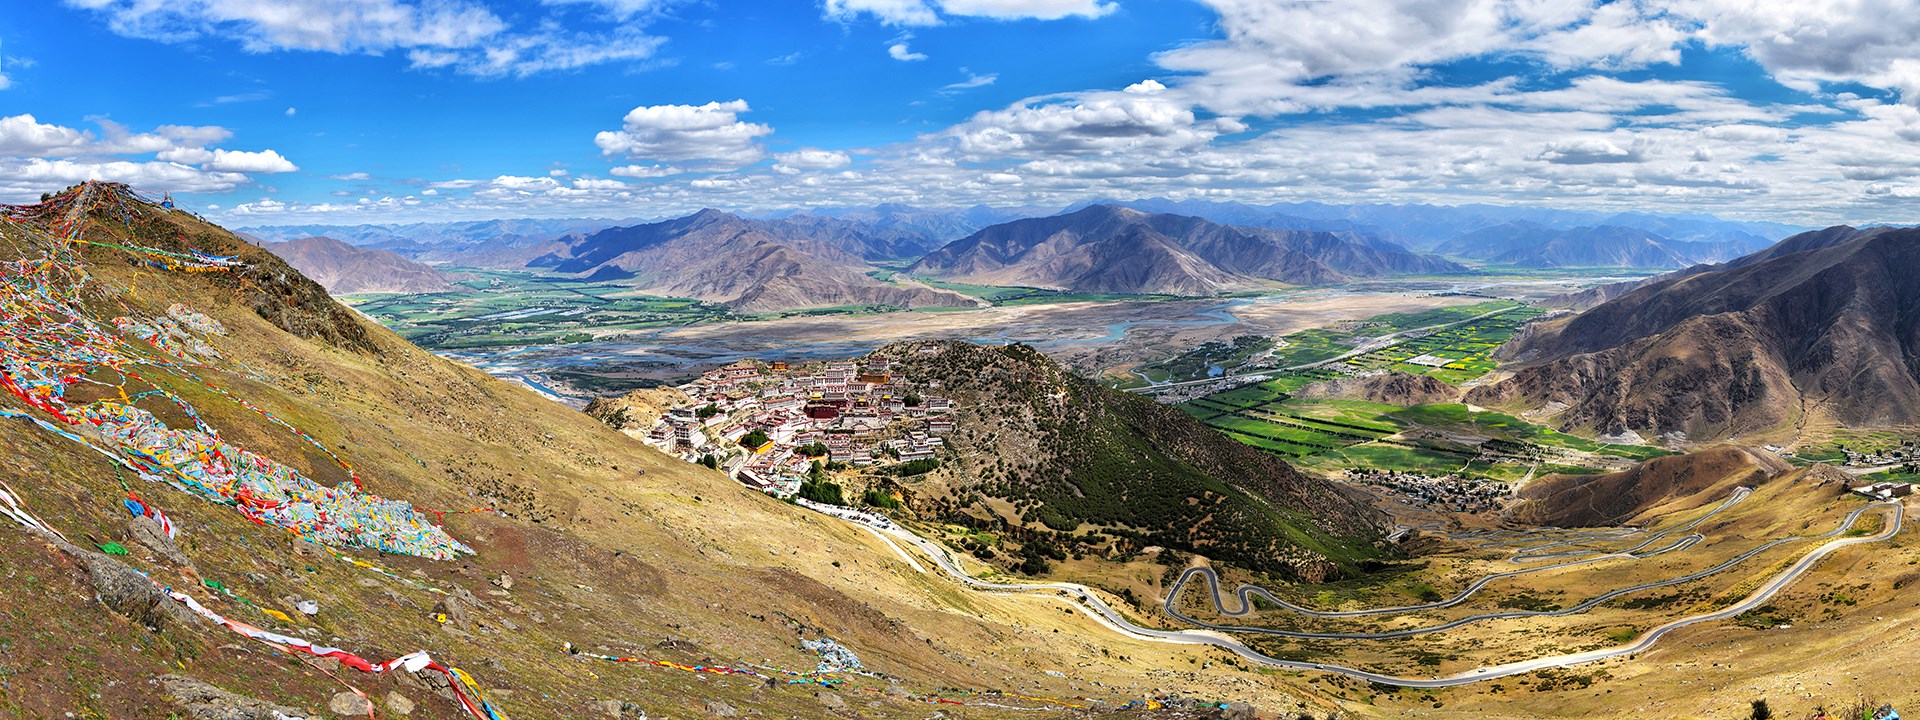 Tibet Trekking from Gandan to Samye